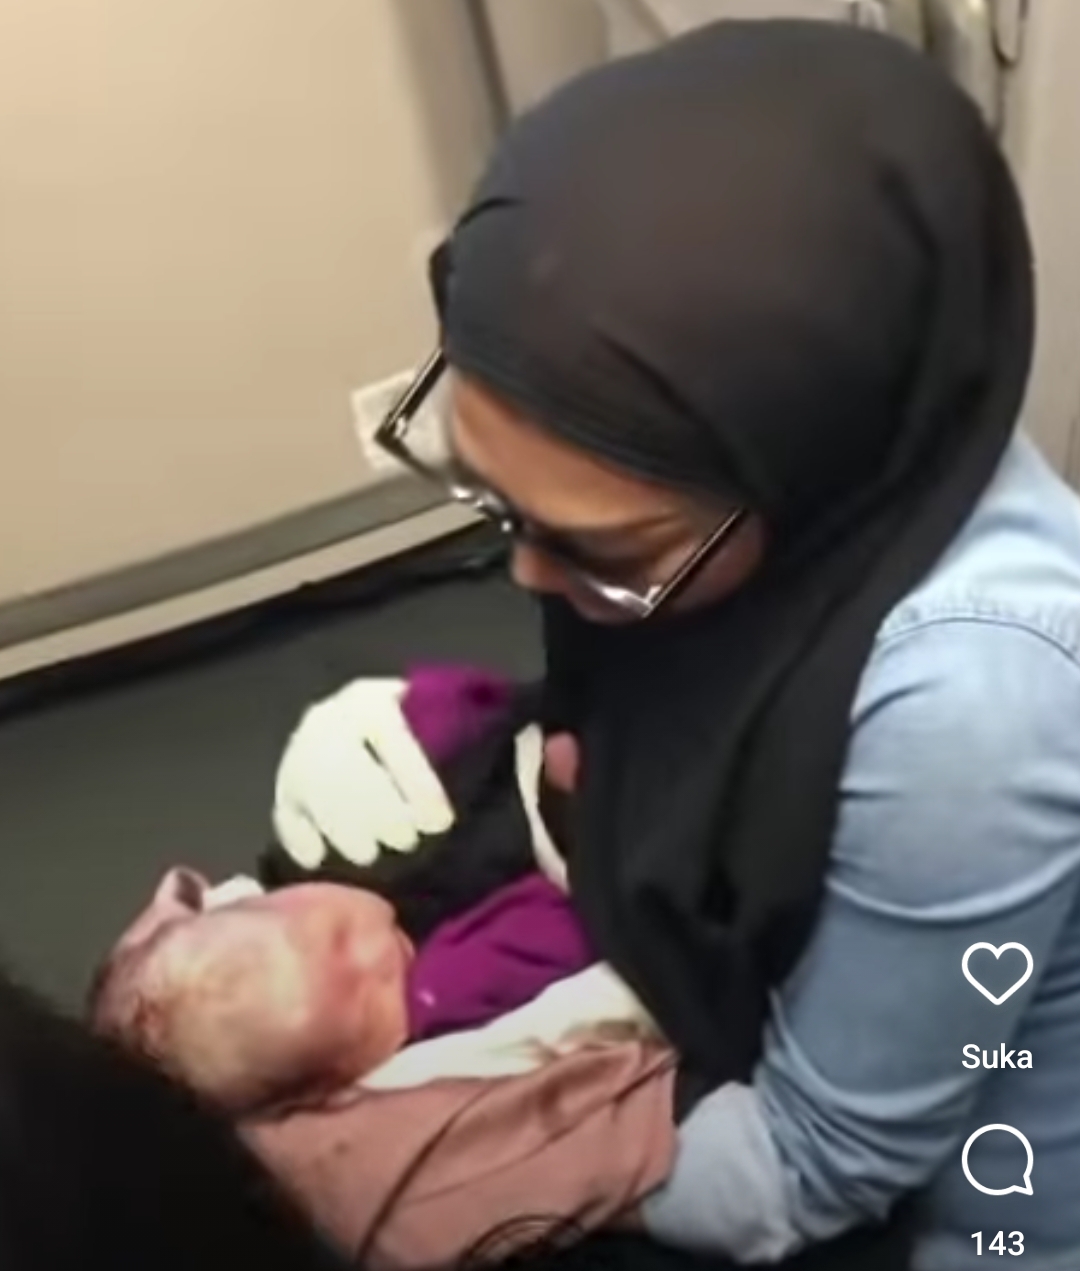 Sosok Wanita dalam Video Viral Membantu Ibu Melahirkan di Pesawat Ternyata Belajar dari Film